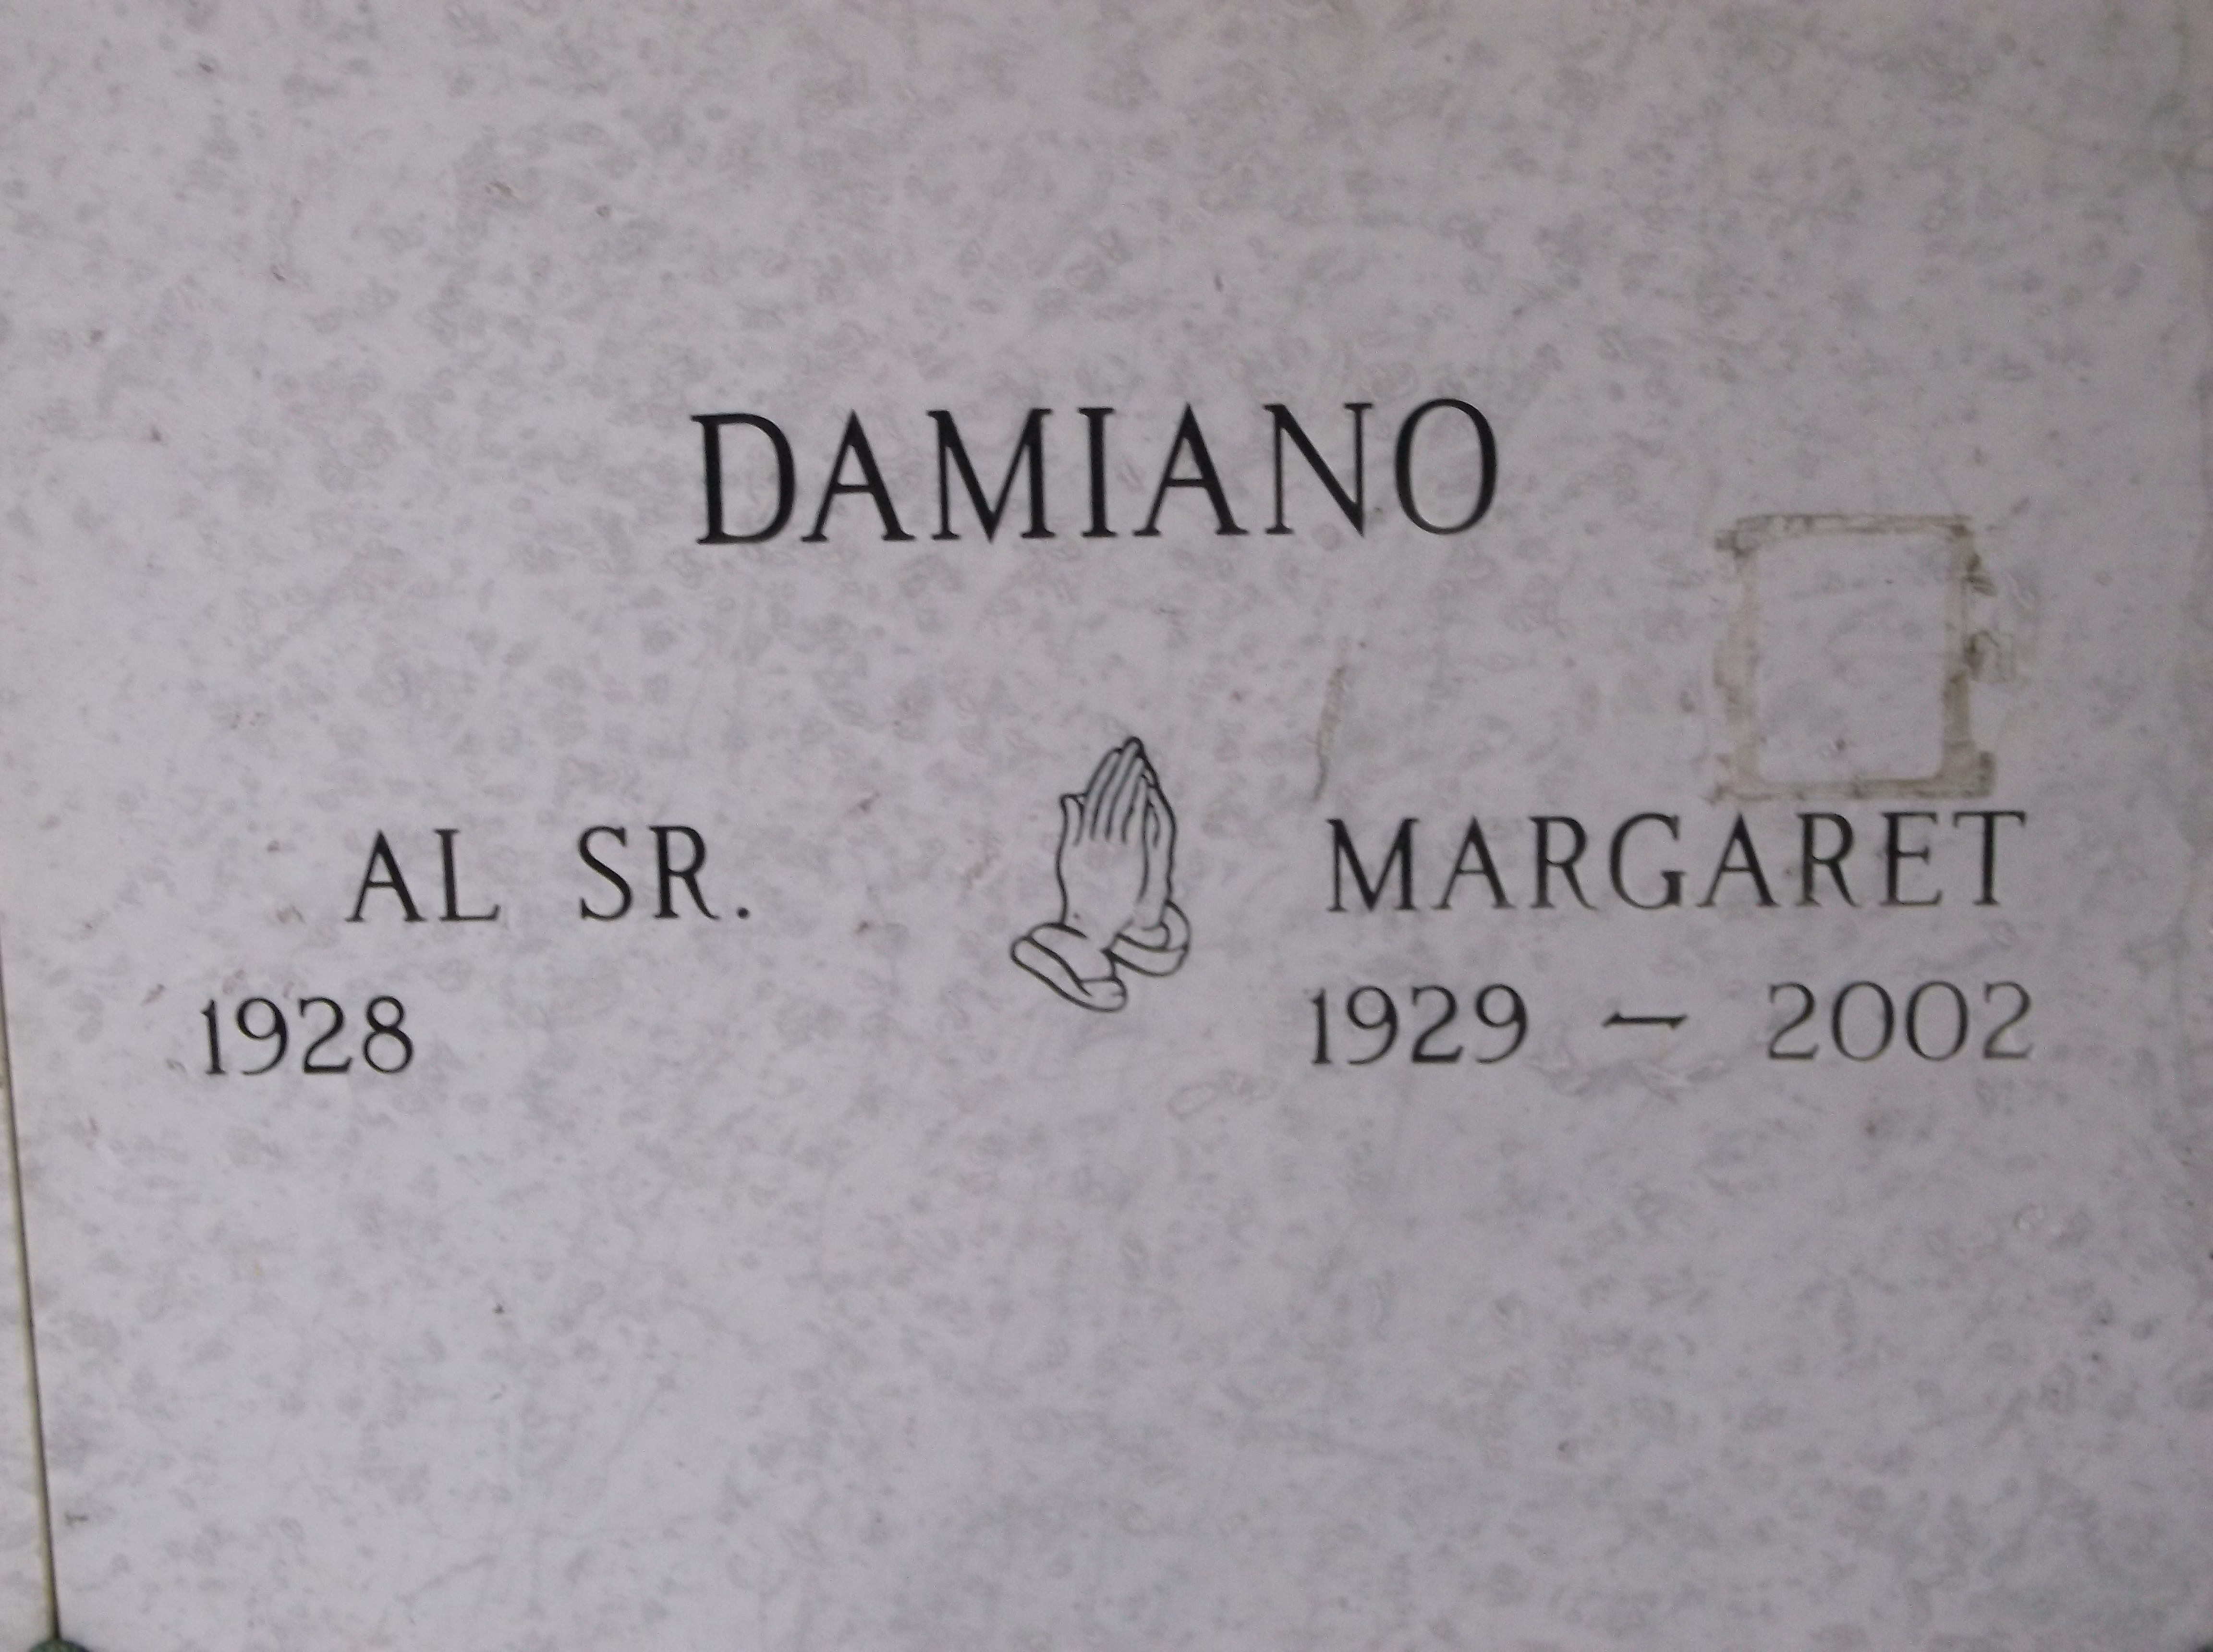 Margaret Damiano